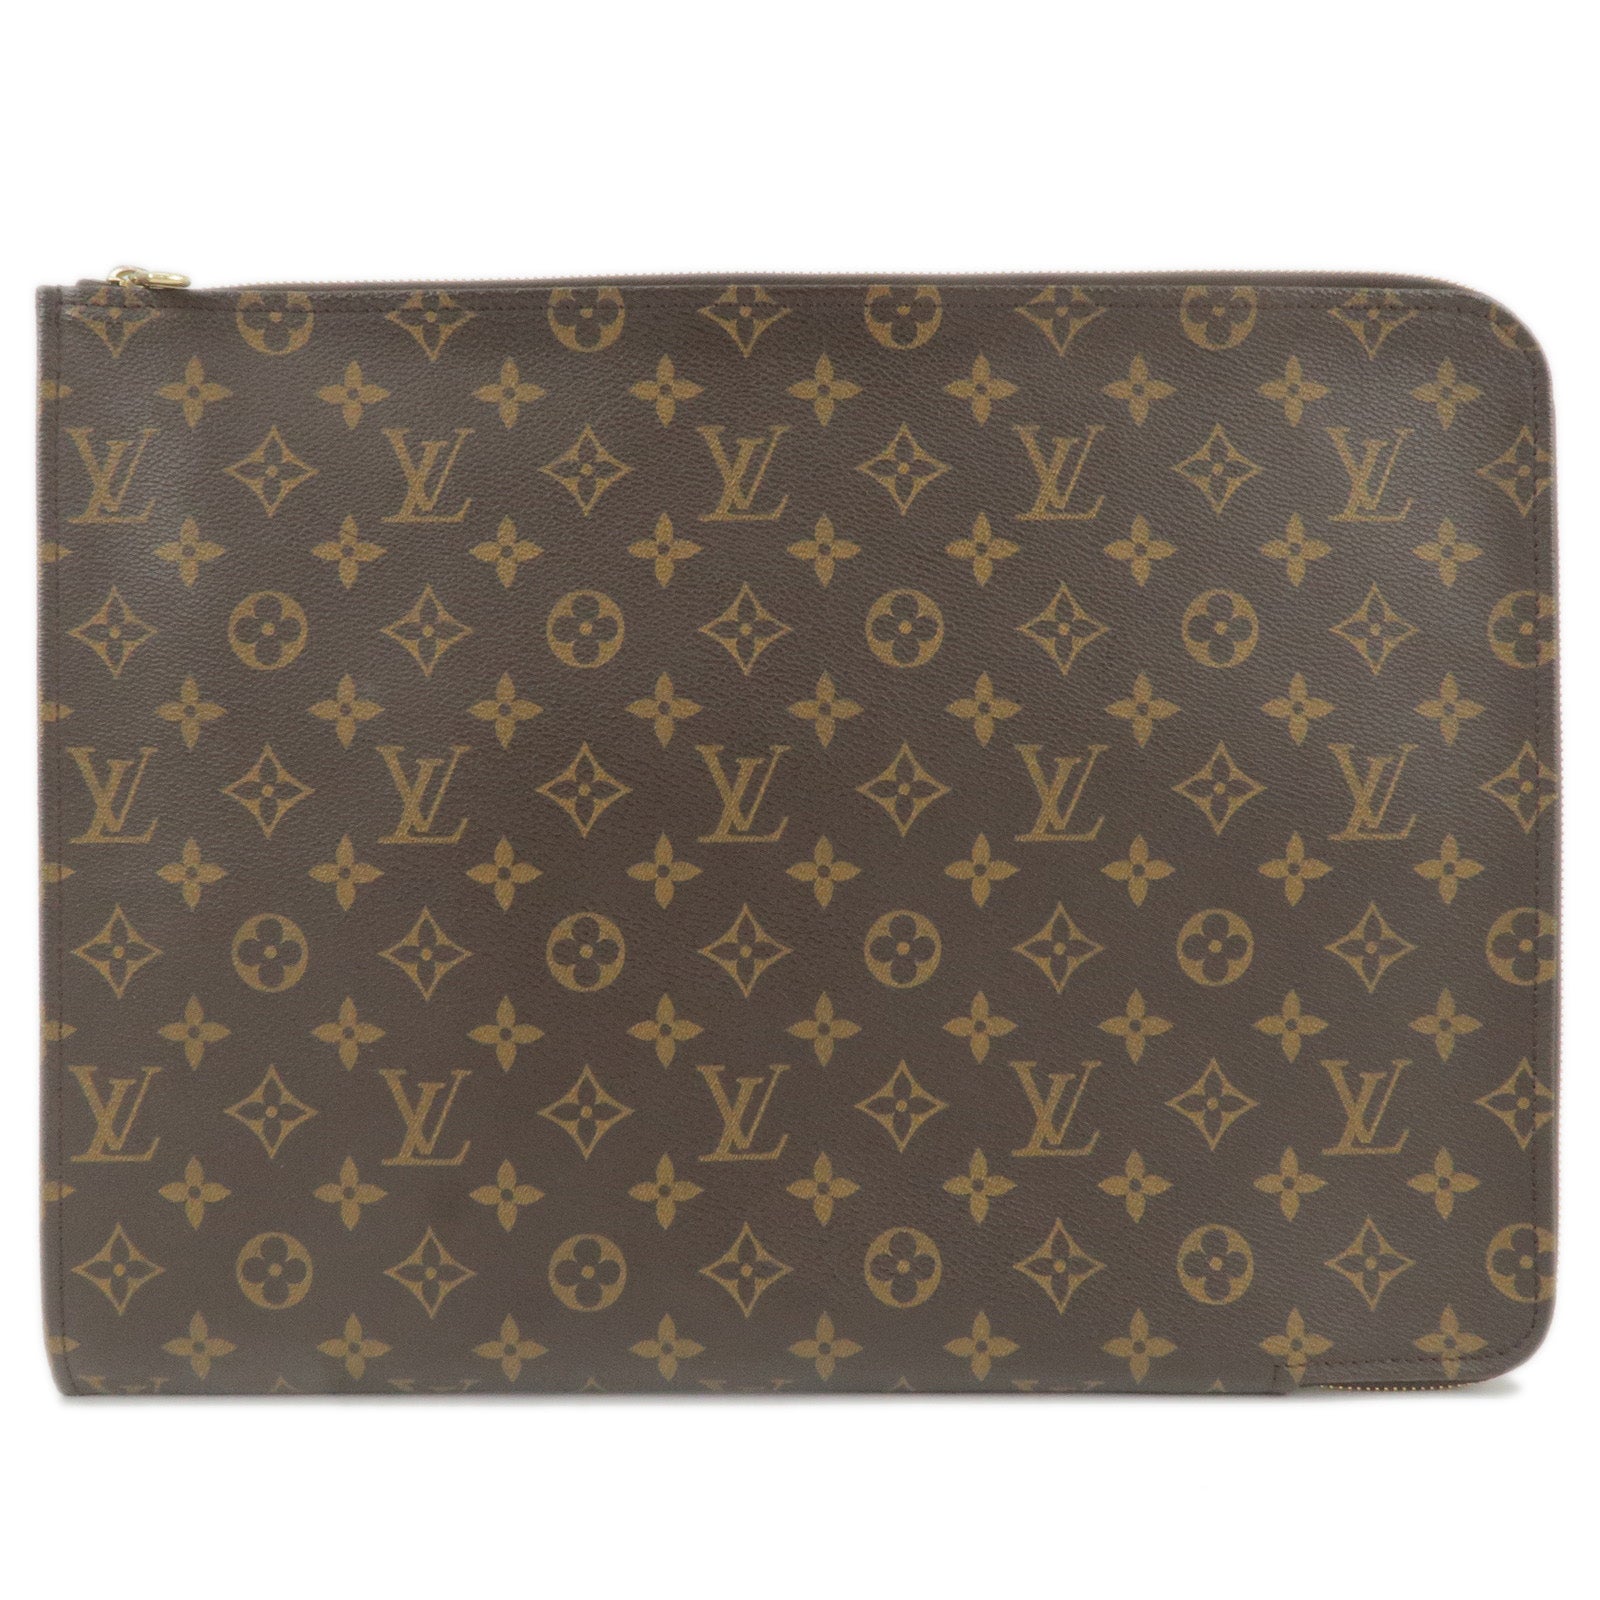 Louis-Vuitton-Monogram-Porte-Documents-Clutch-Bag-M53456